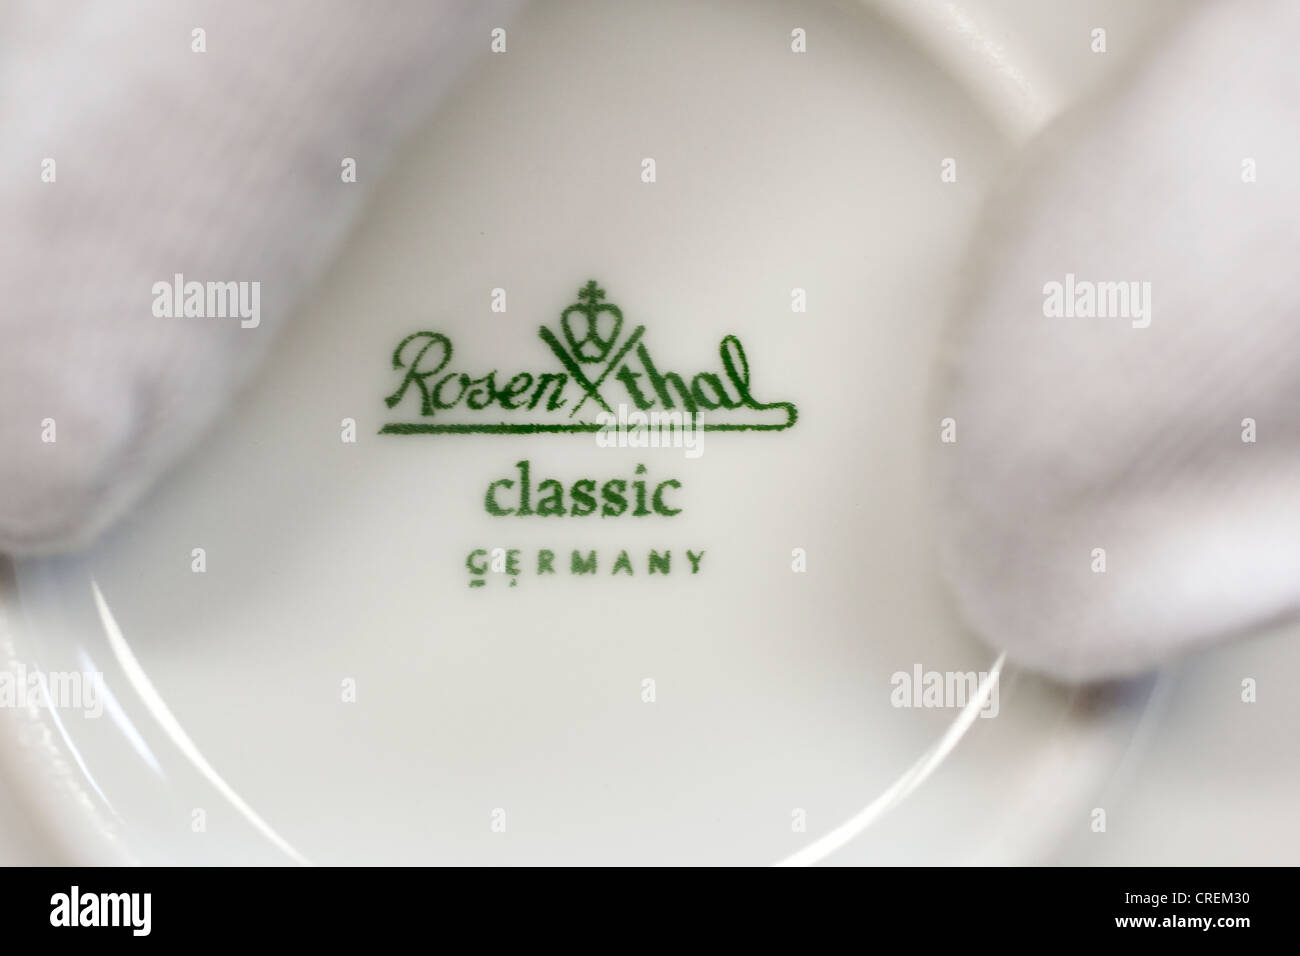 Logo e scritte di Rosenthal GmbH, sul fondo di una piastra in corrispondenza della manifattura di porcellane Rosenthal GmbH, Speichersdorf Foto Stock